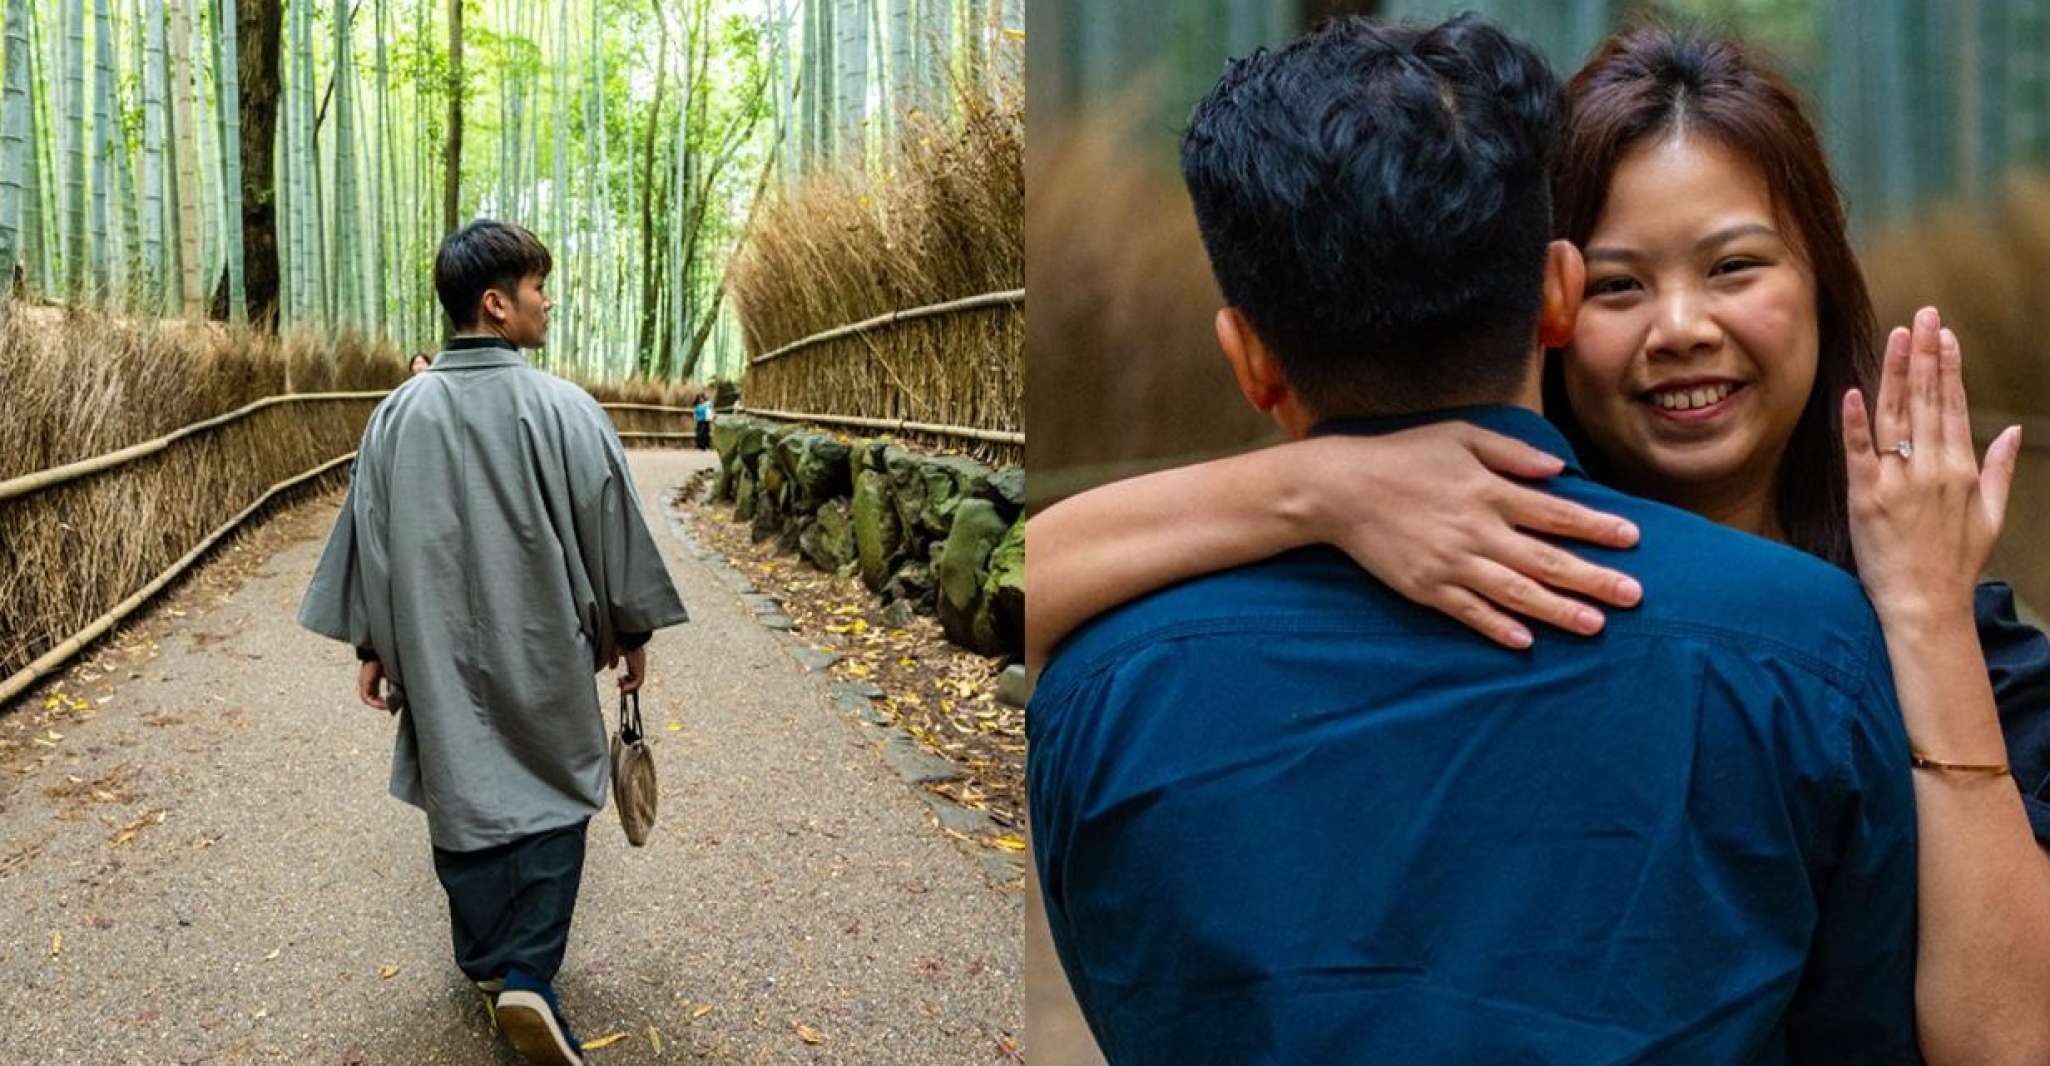 Arashiyama, Photoshoot in Bamboo Forests and Kimono Forest - Housity